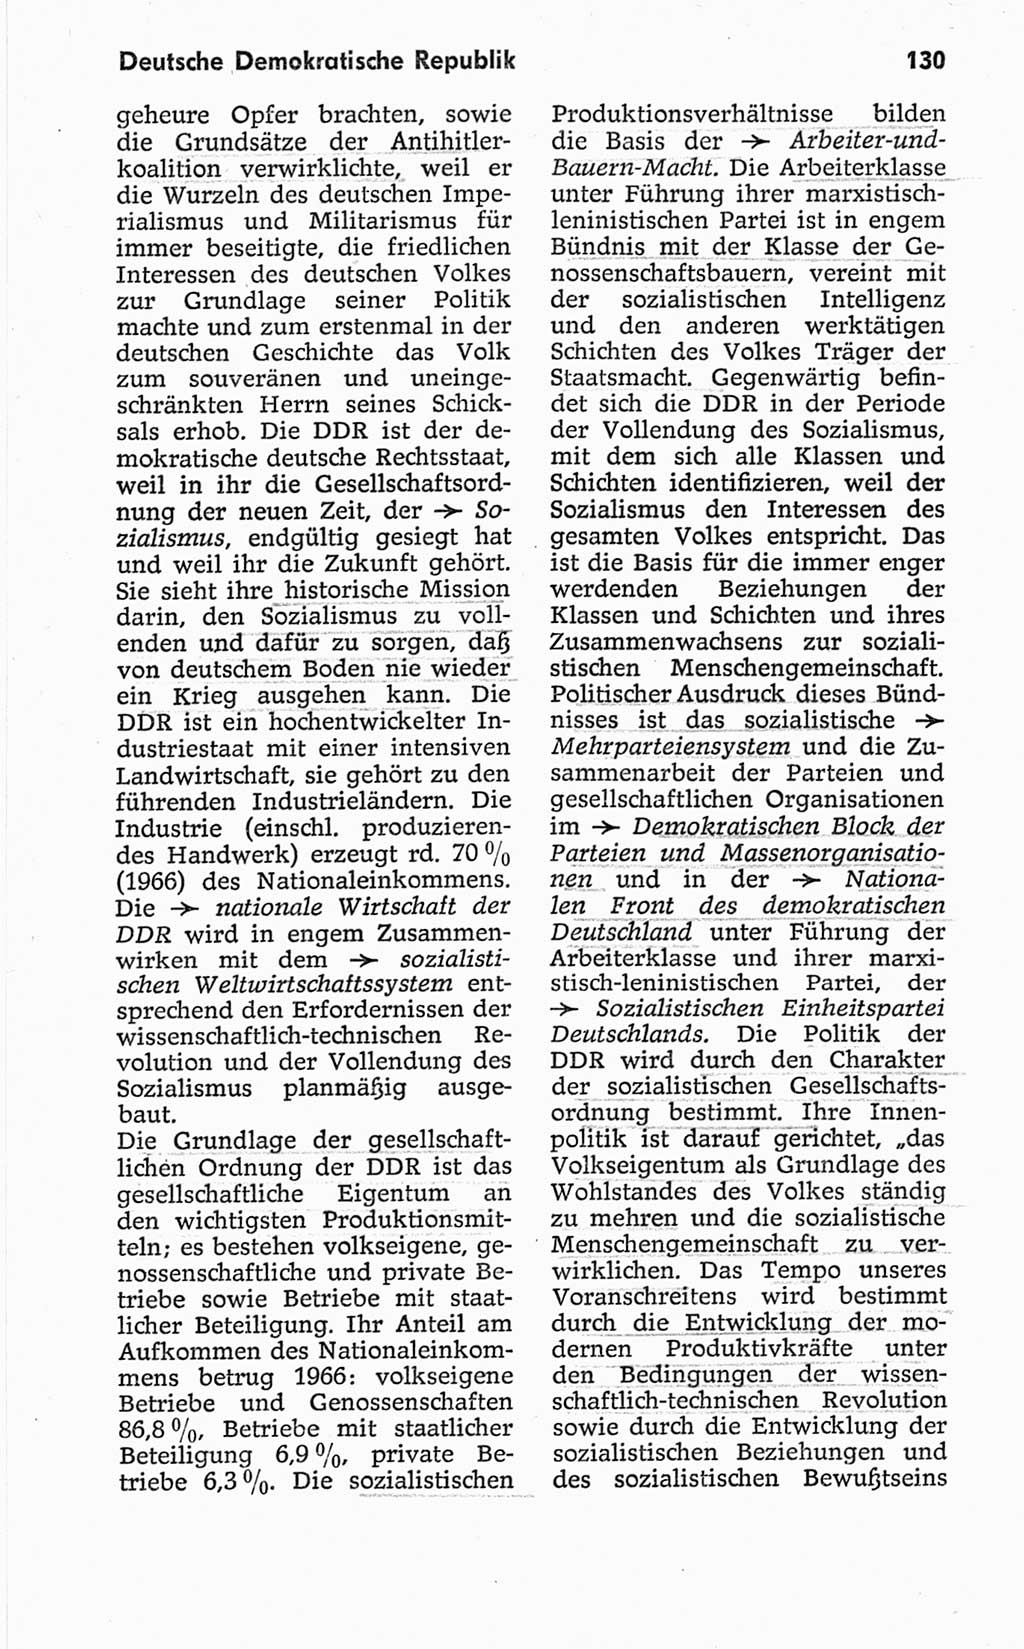 Kleines politisches Wörterbuch [Deutsche Demokratische Republik (DDR)] 1967, Seite 130 (Kl. pol. Wb. DDR 1967, S. 130)